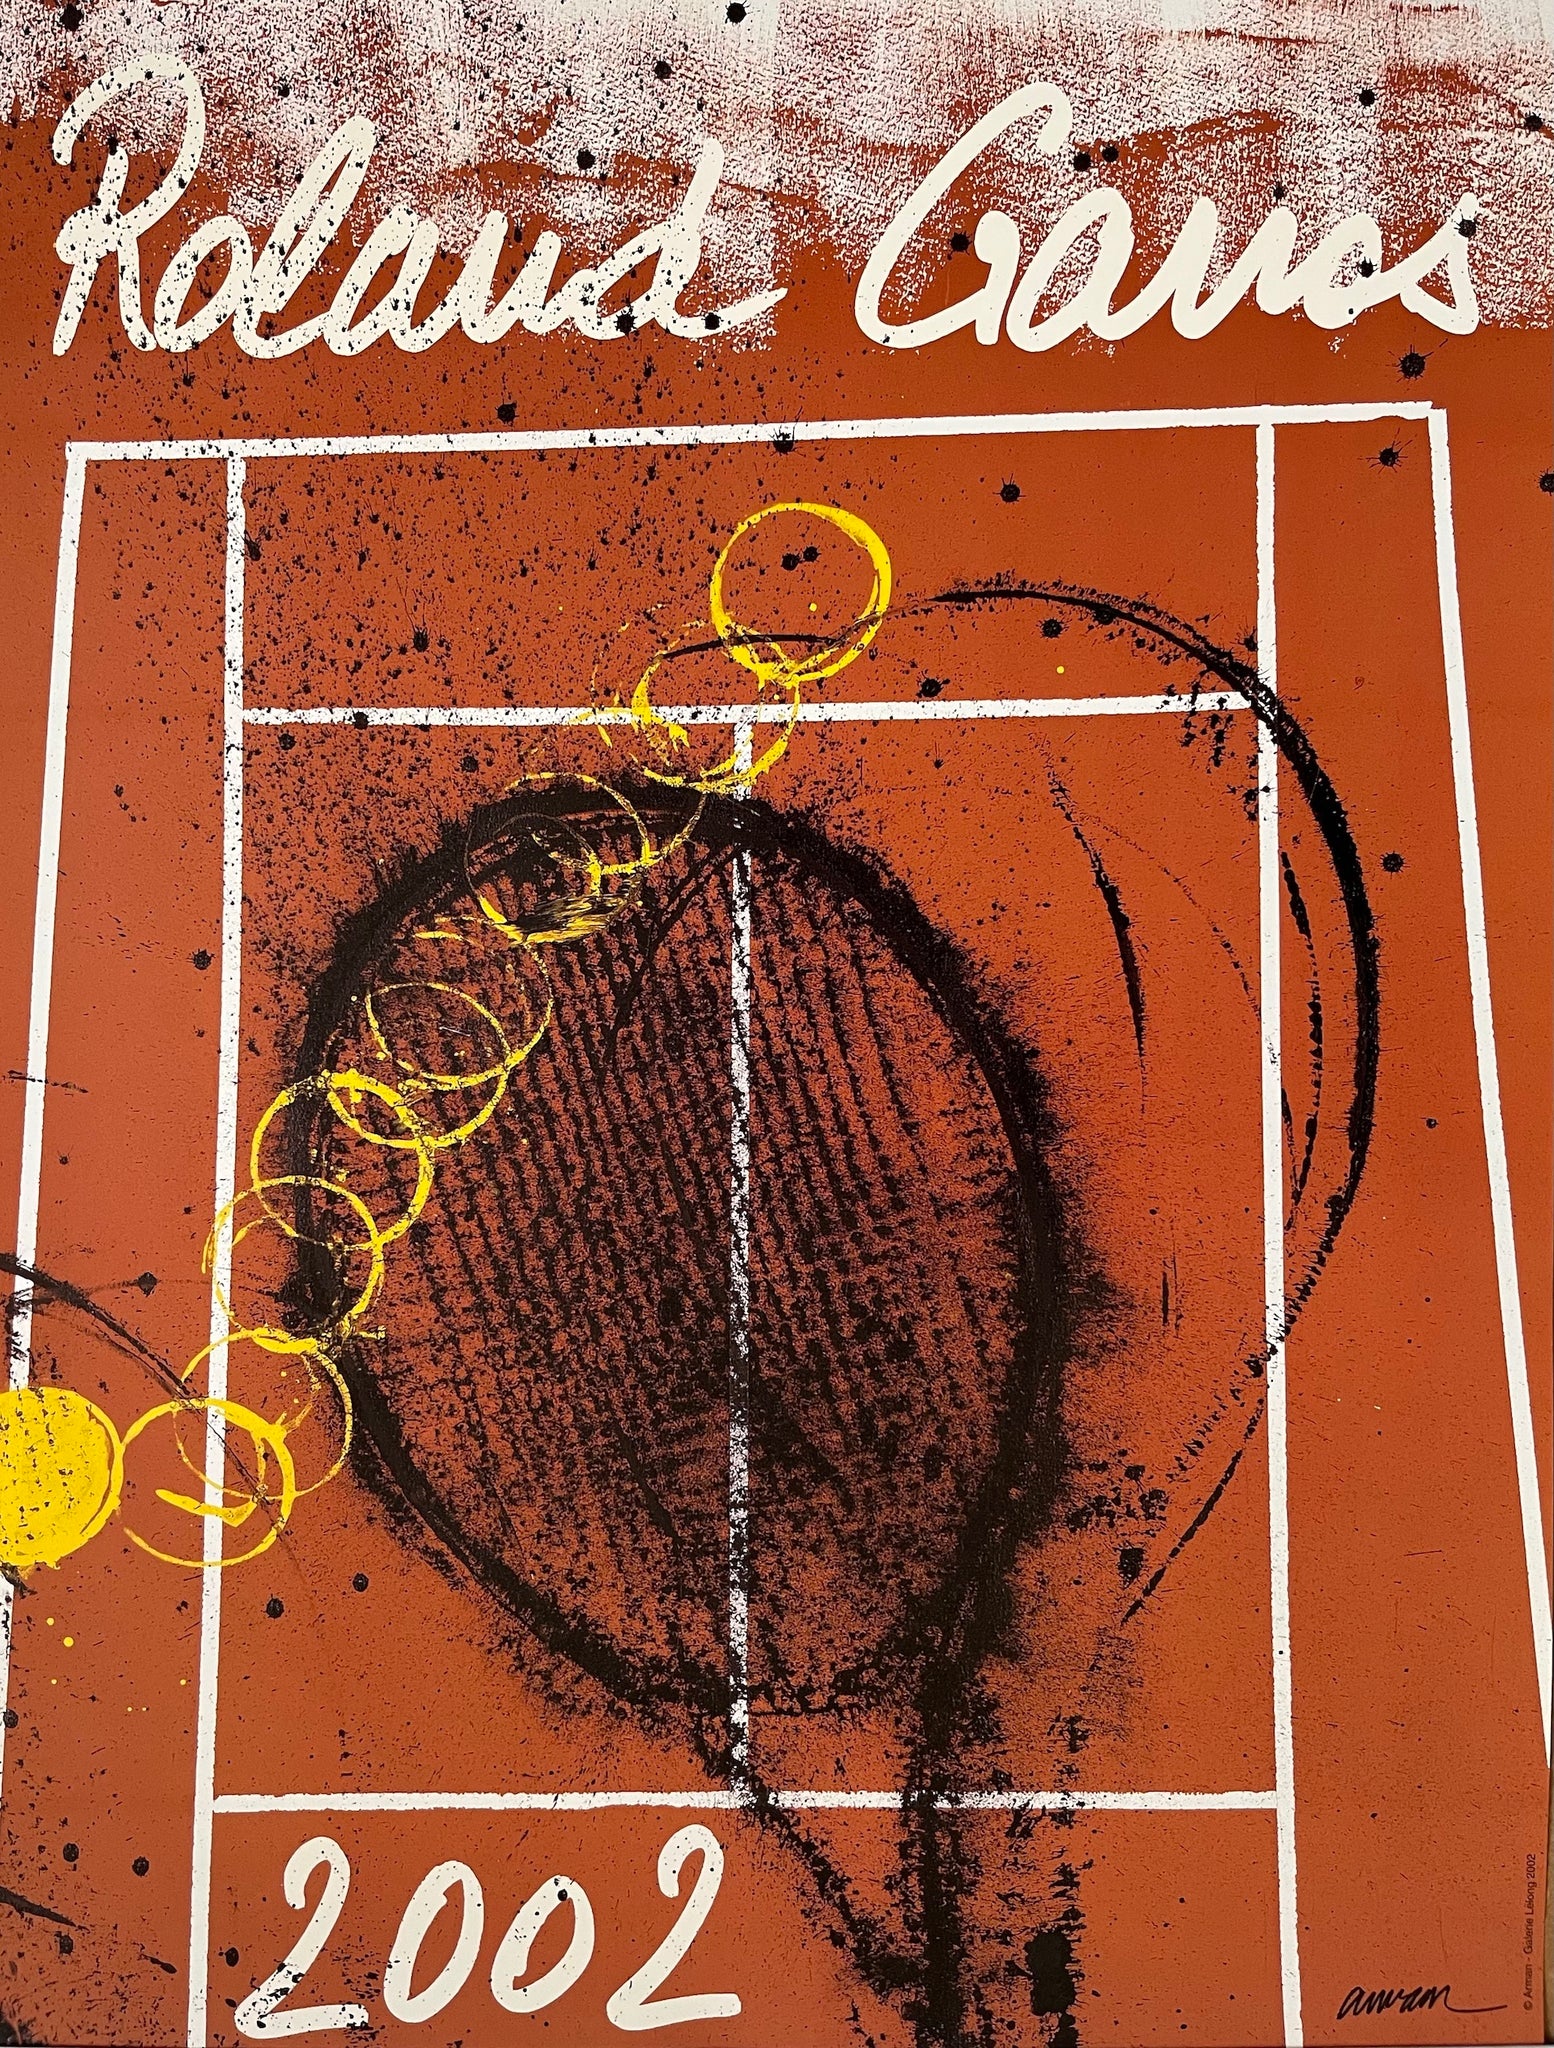 Roland Garros 2002 Tennis Poster